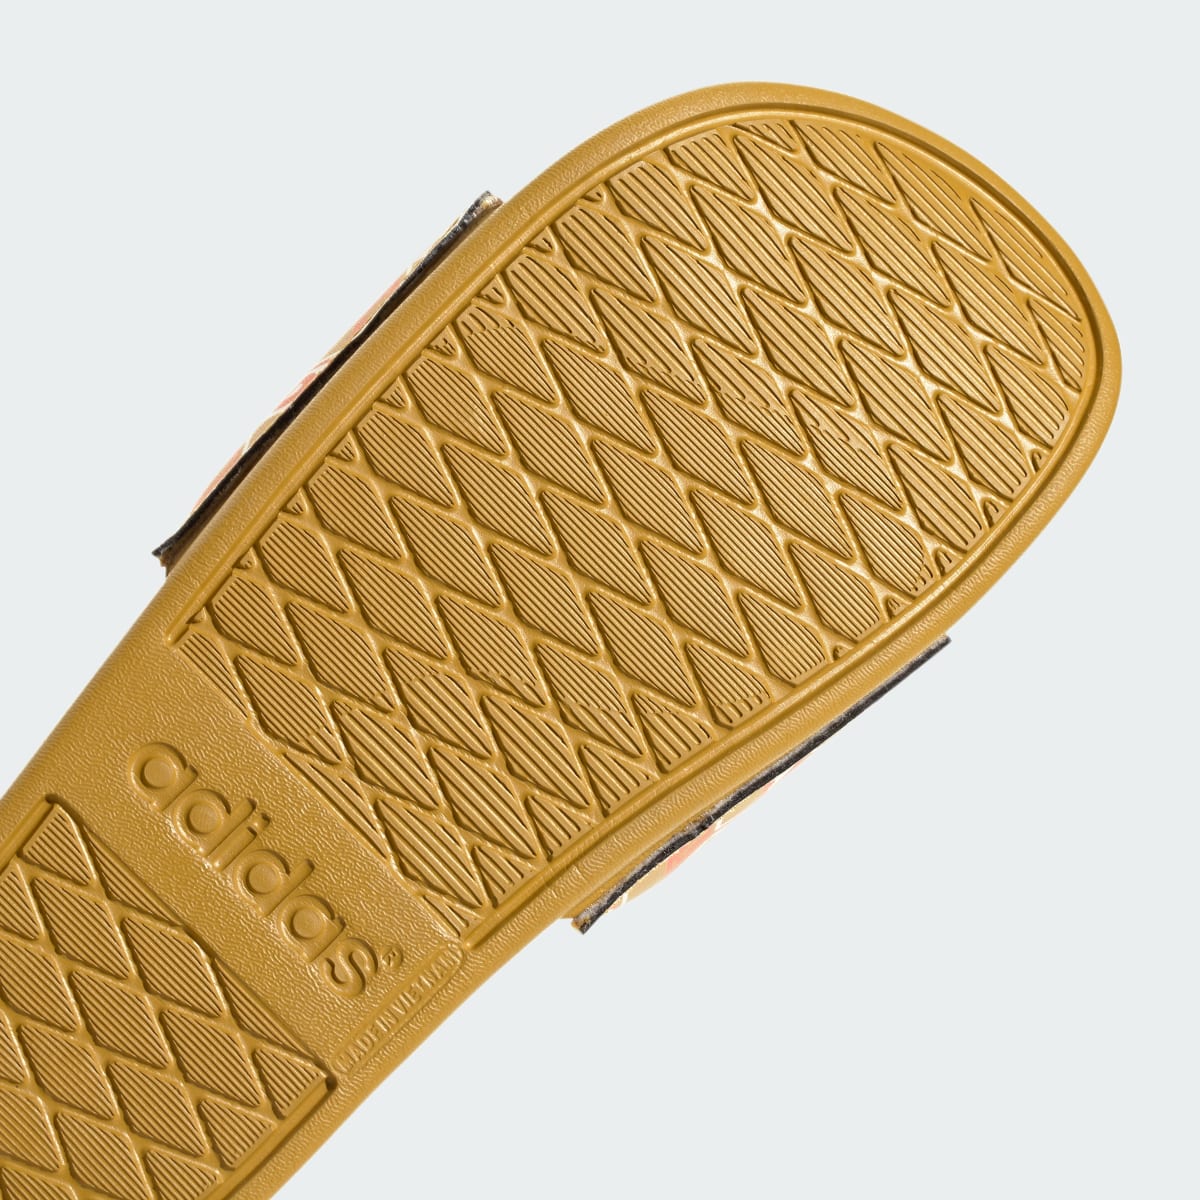 Adidas adilette Comfort Sandale. 9